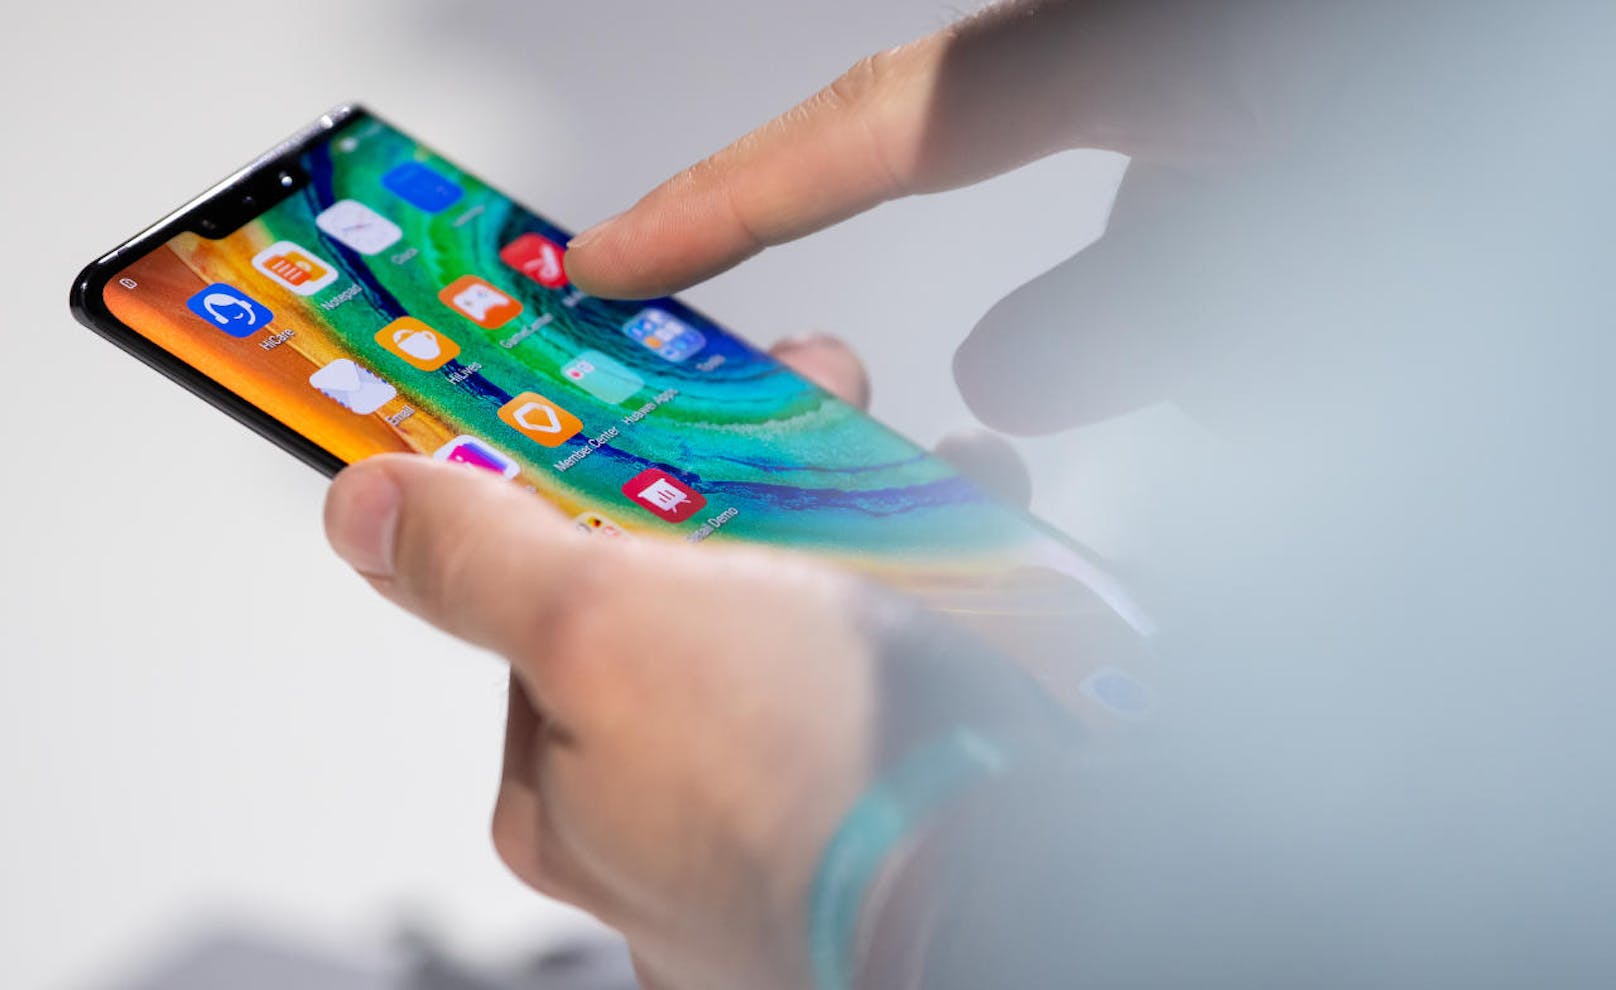 Huawei Mobile Services (HMS) soll das neue System heißen, das langfristig gesehen die dritte große Smartphone- und Mobilgeräte-Plattform neben iOS und Android werden soll.